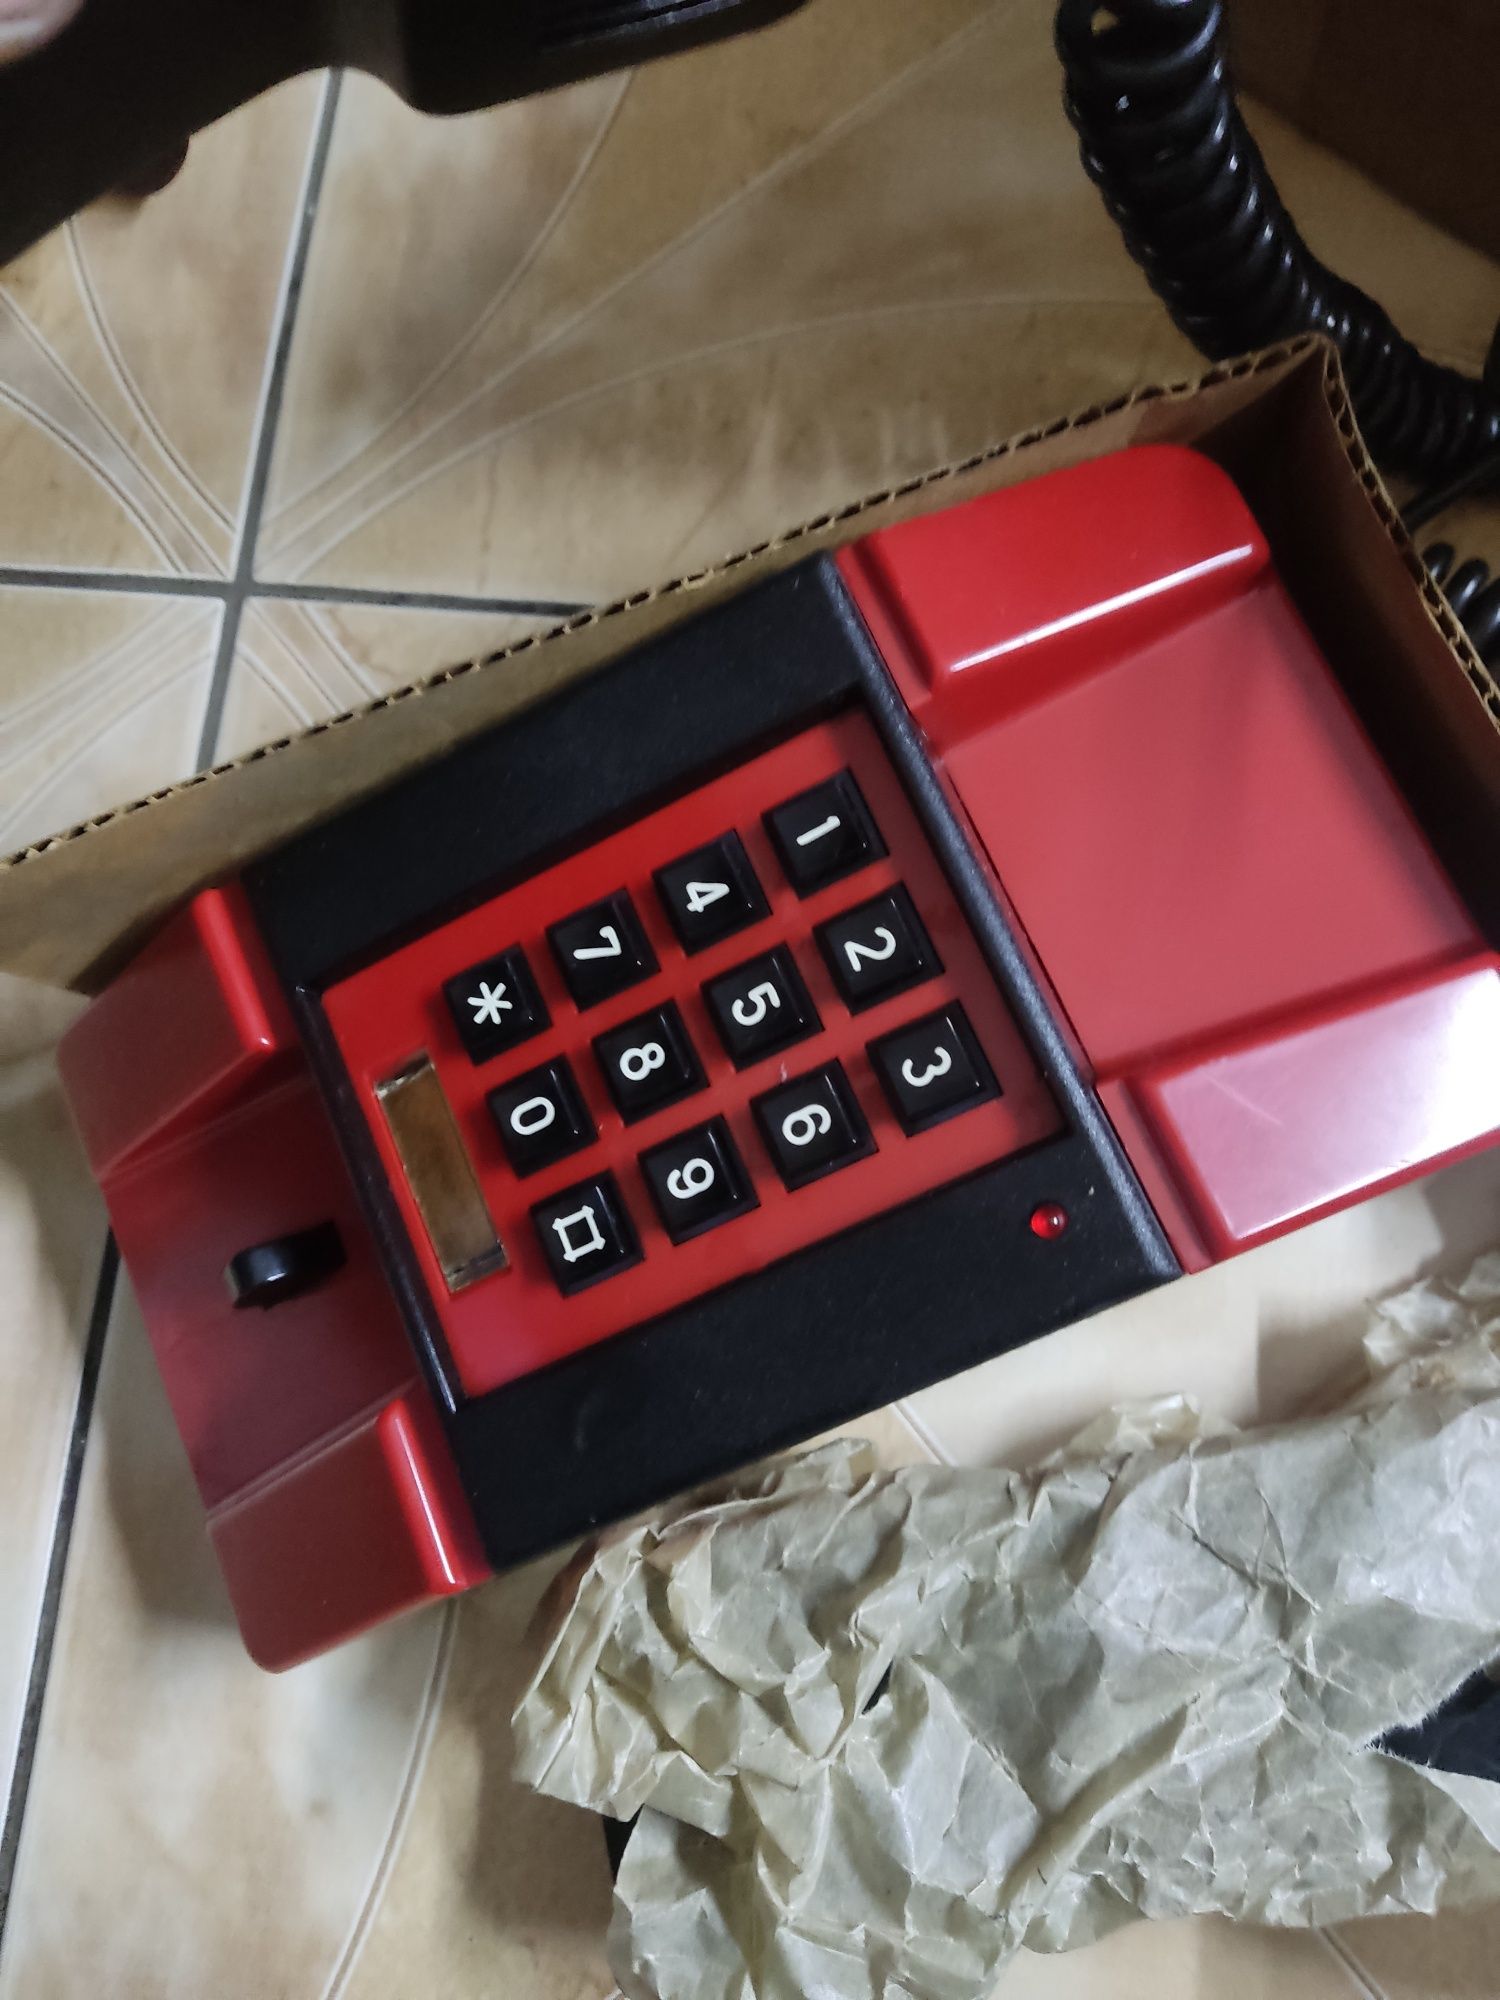 Telefon Bartek nowy zapakowany w pudełko PRL